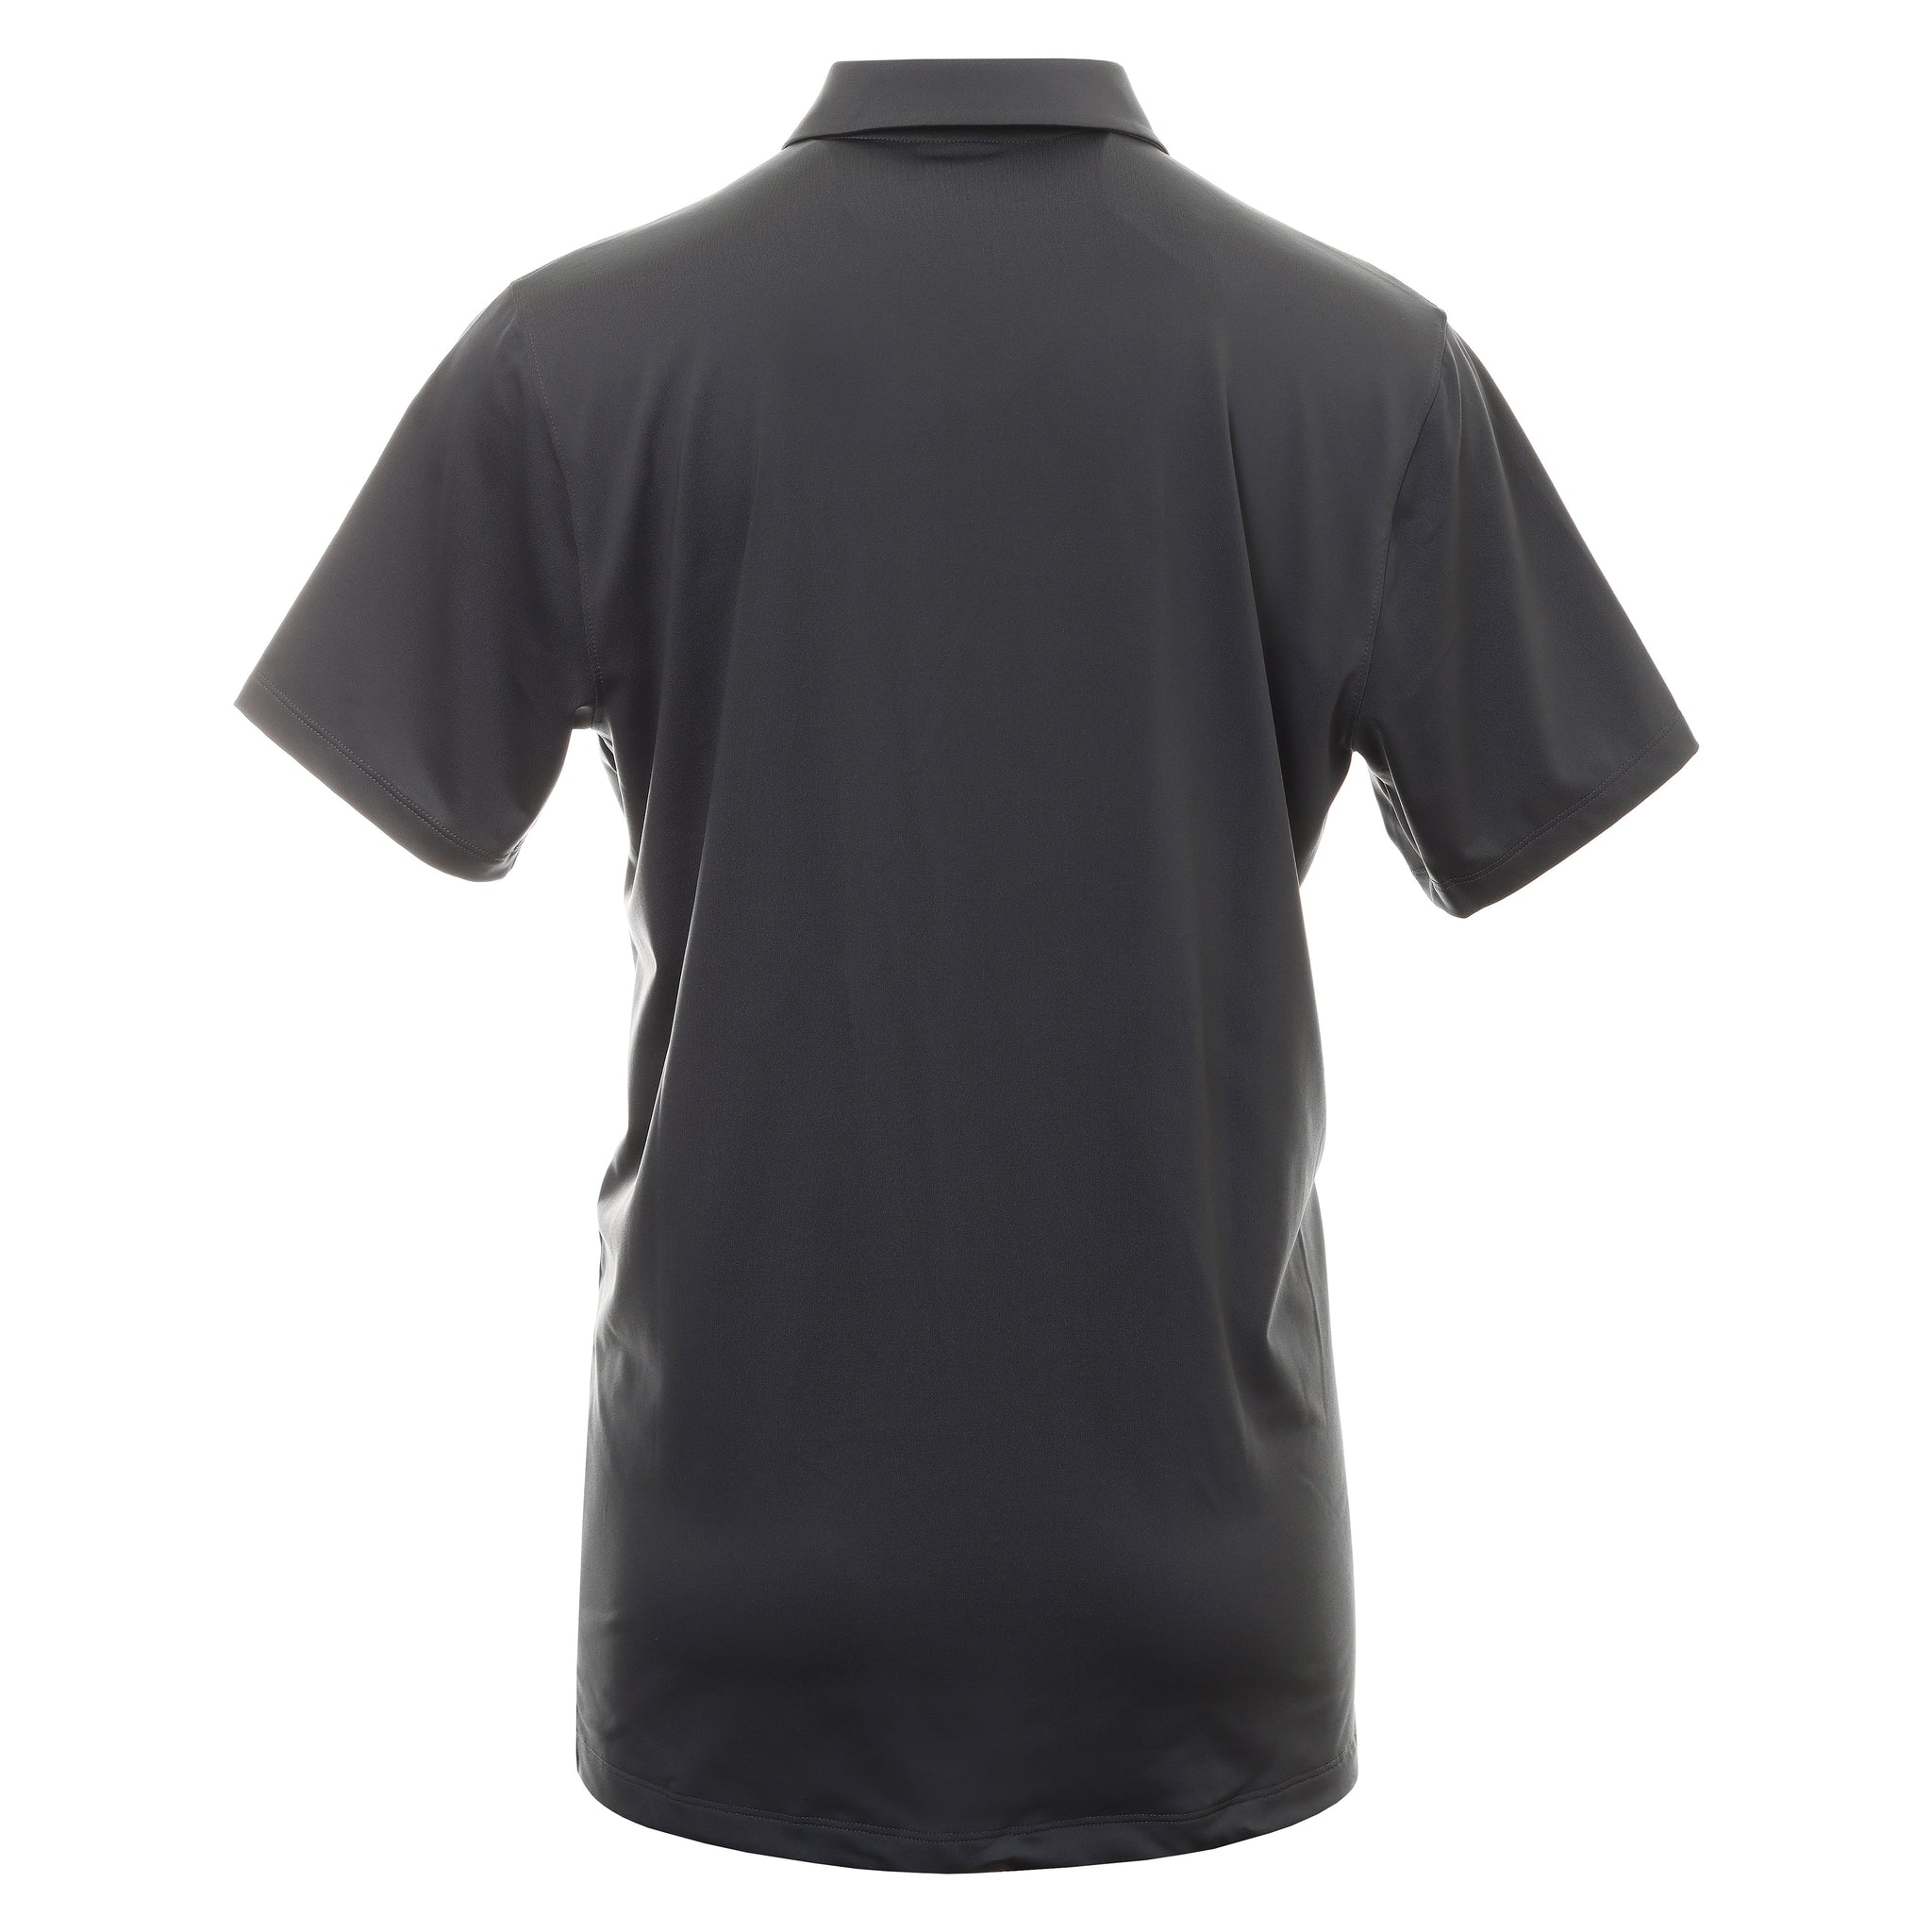 Nike Golf Dry Vapor Stripe Shirt